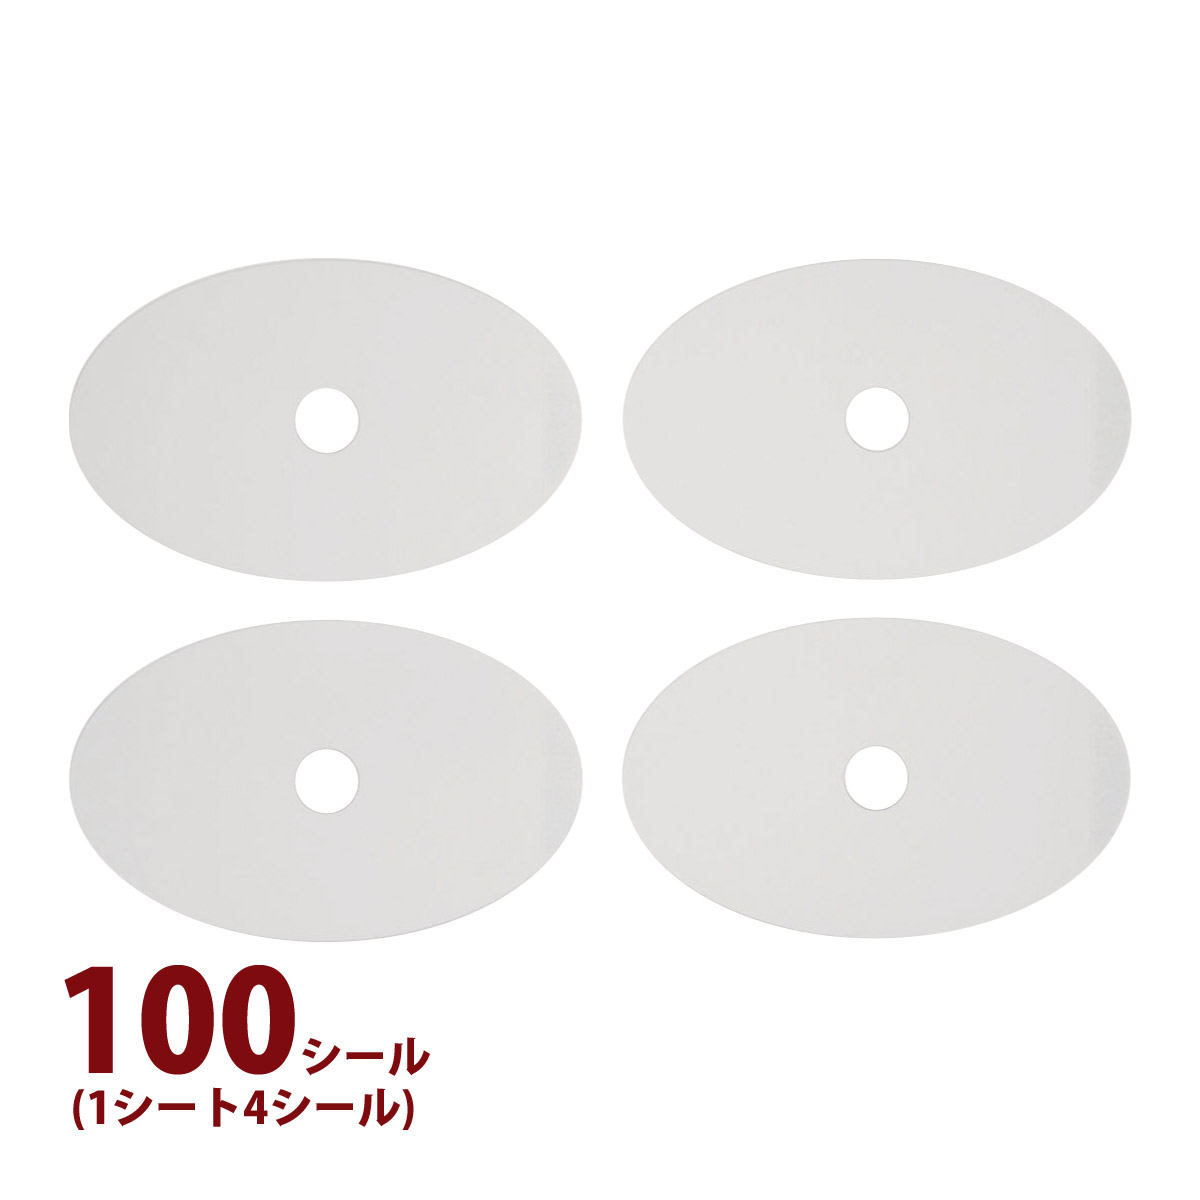 レンズ保護テープ 強力粘着シートタイプ100枚 メガネ 眼鏡 加工 修理 調整 ズレ防止